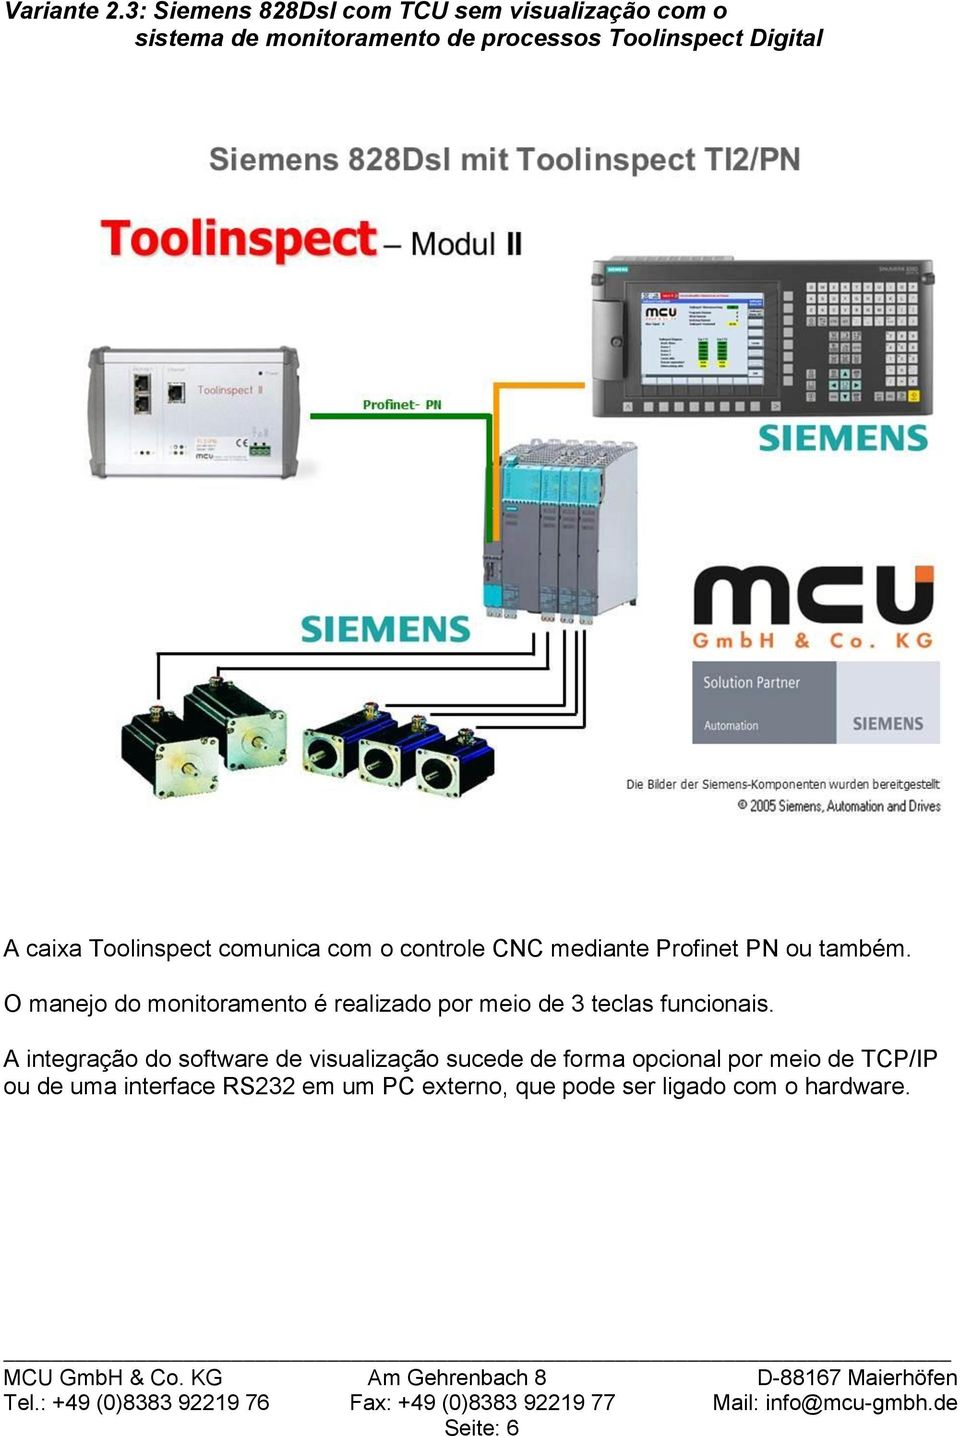 caixa Toolinspect comunica com o controle CNC mediante Profinet PN ou também.